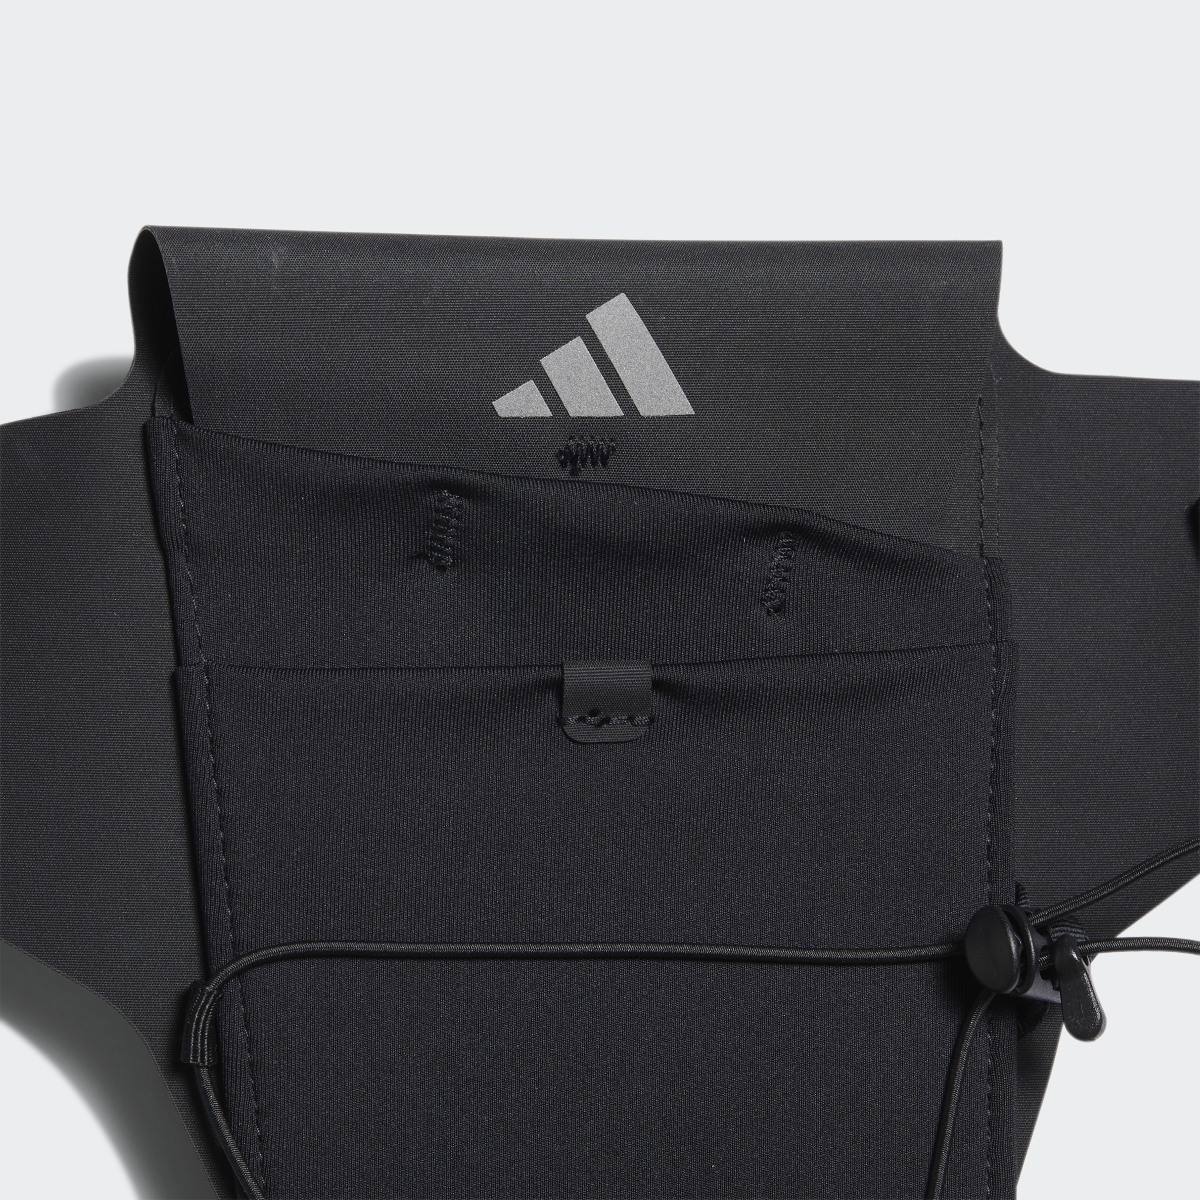 Adidas Running Pocket Bag. 5